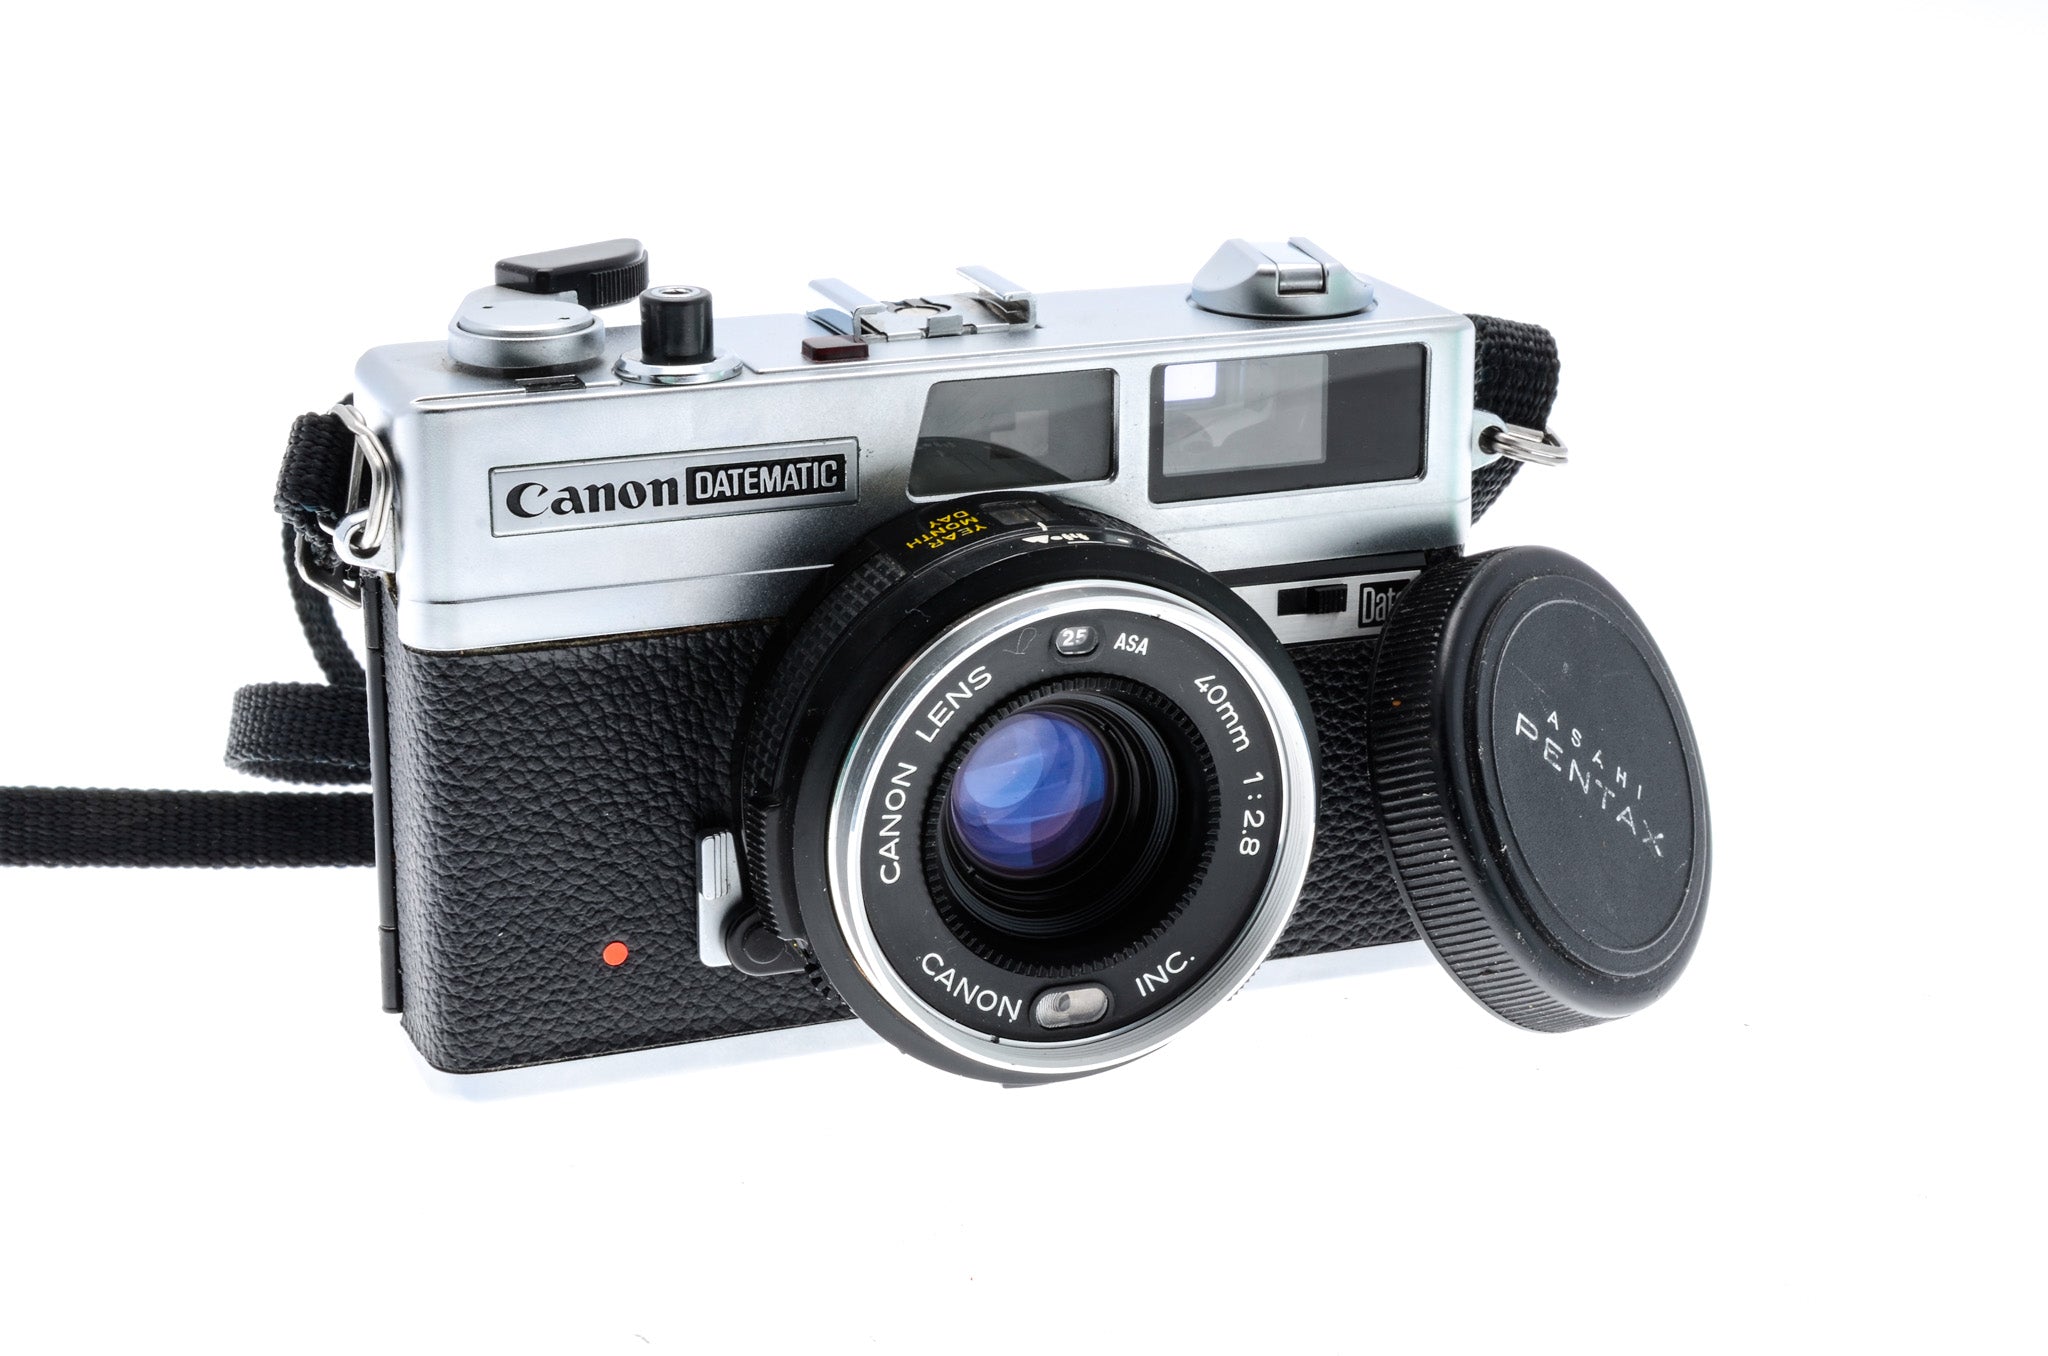 Canon Datematic - Camera